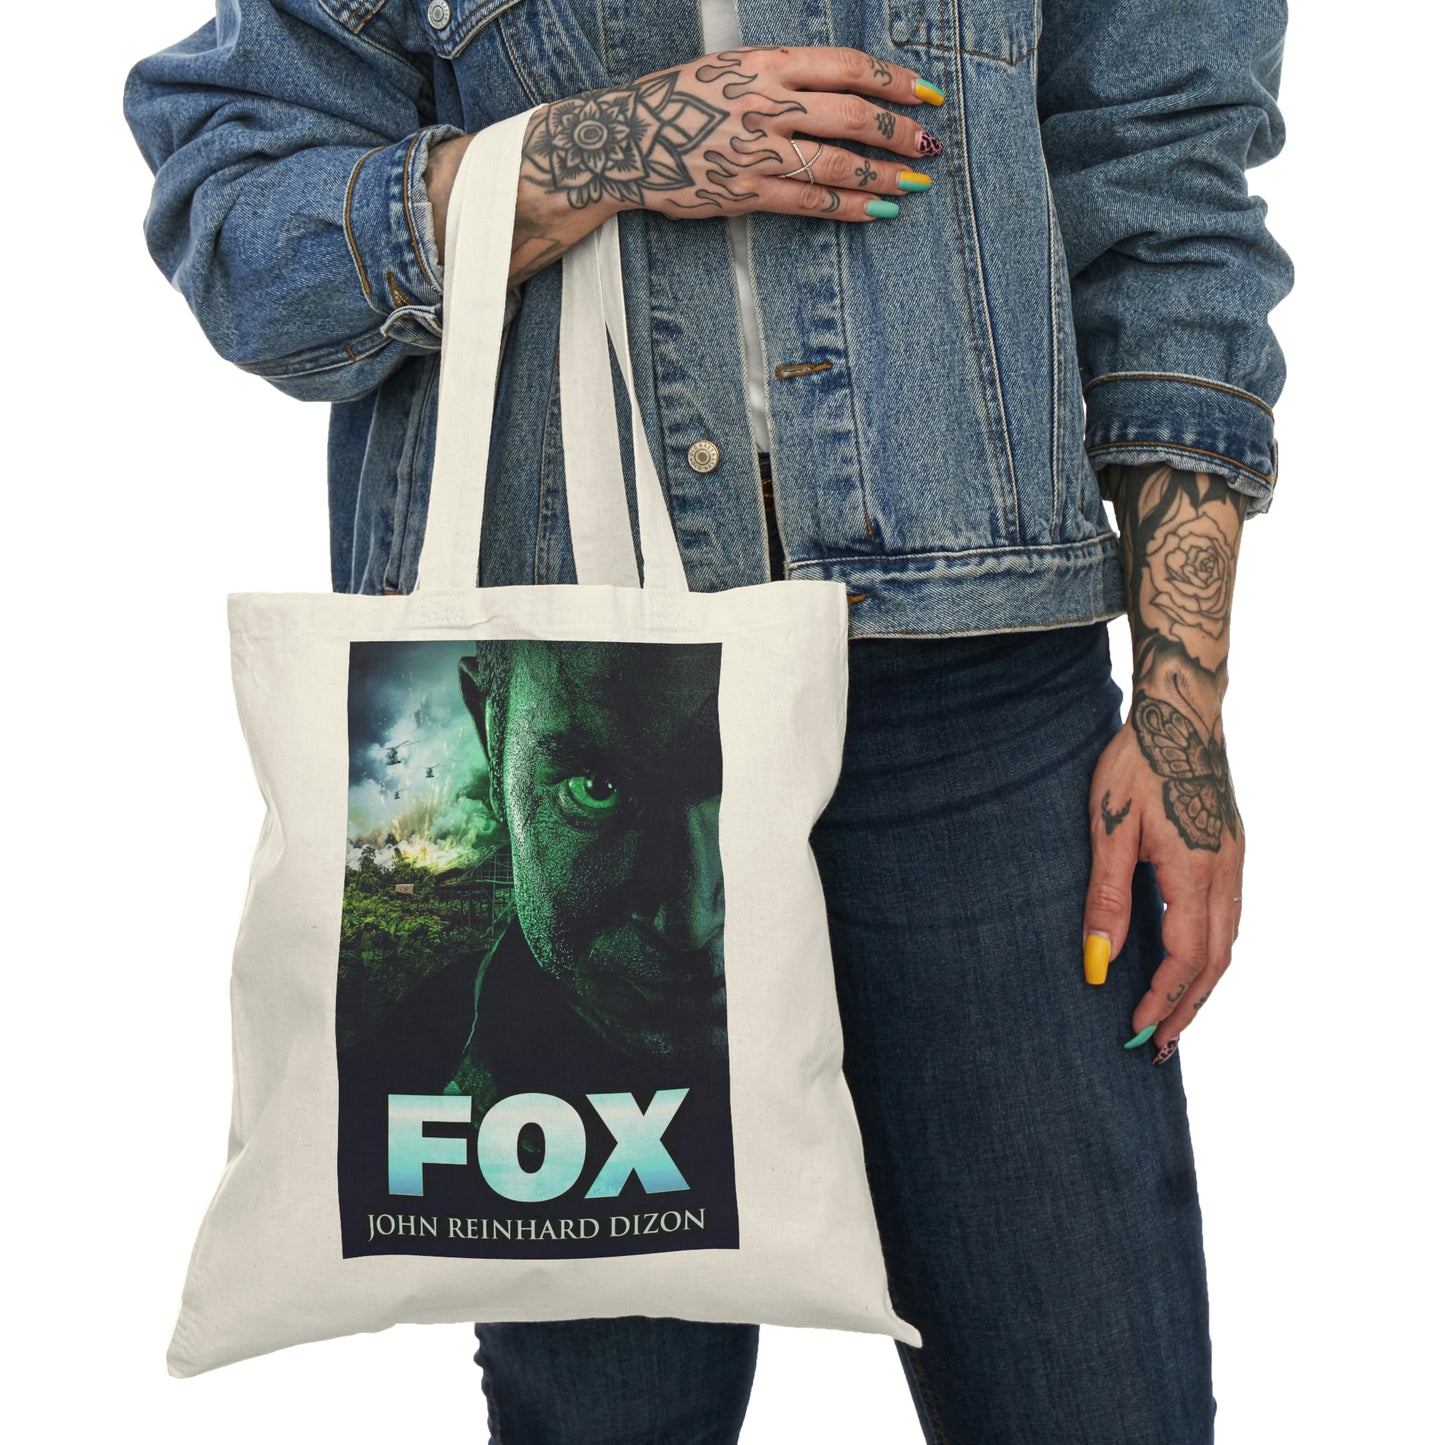 Fox - Natural Tote Bag